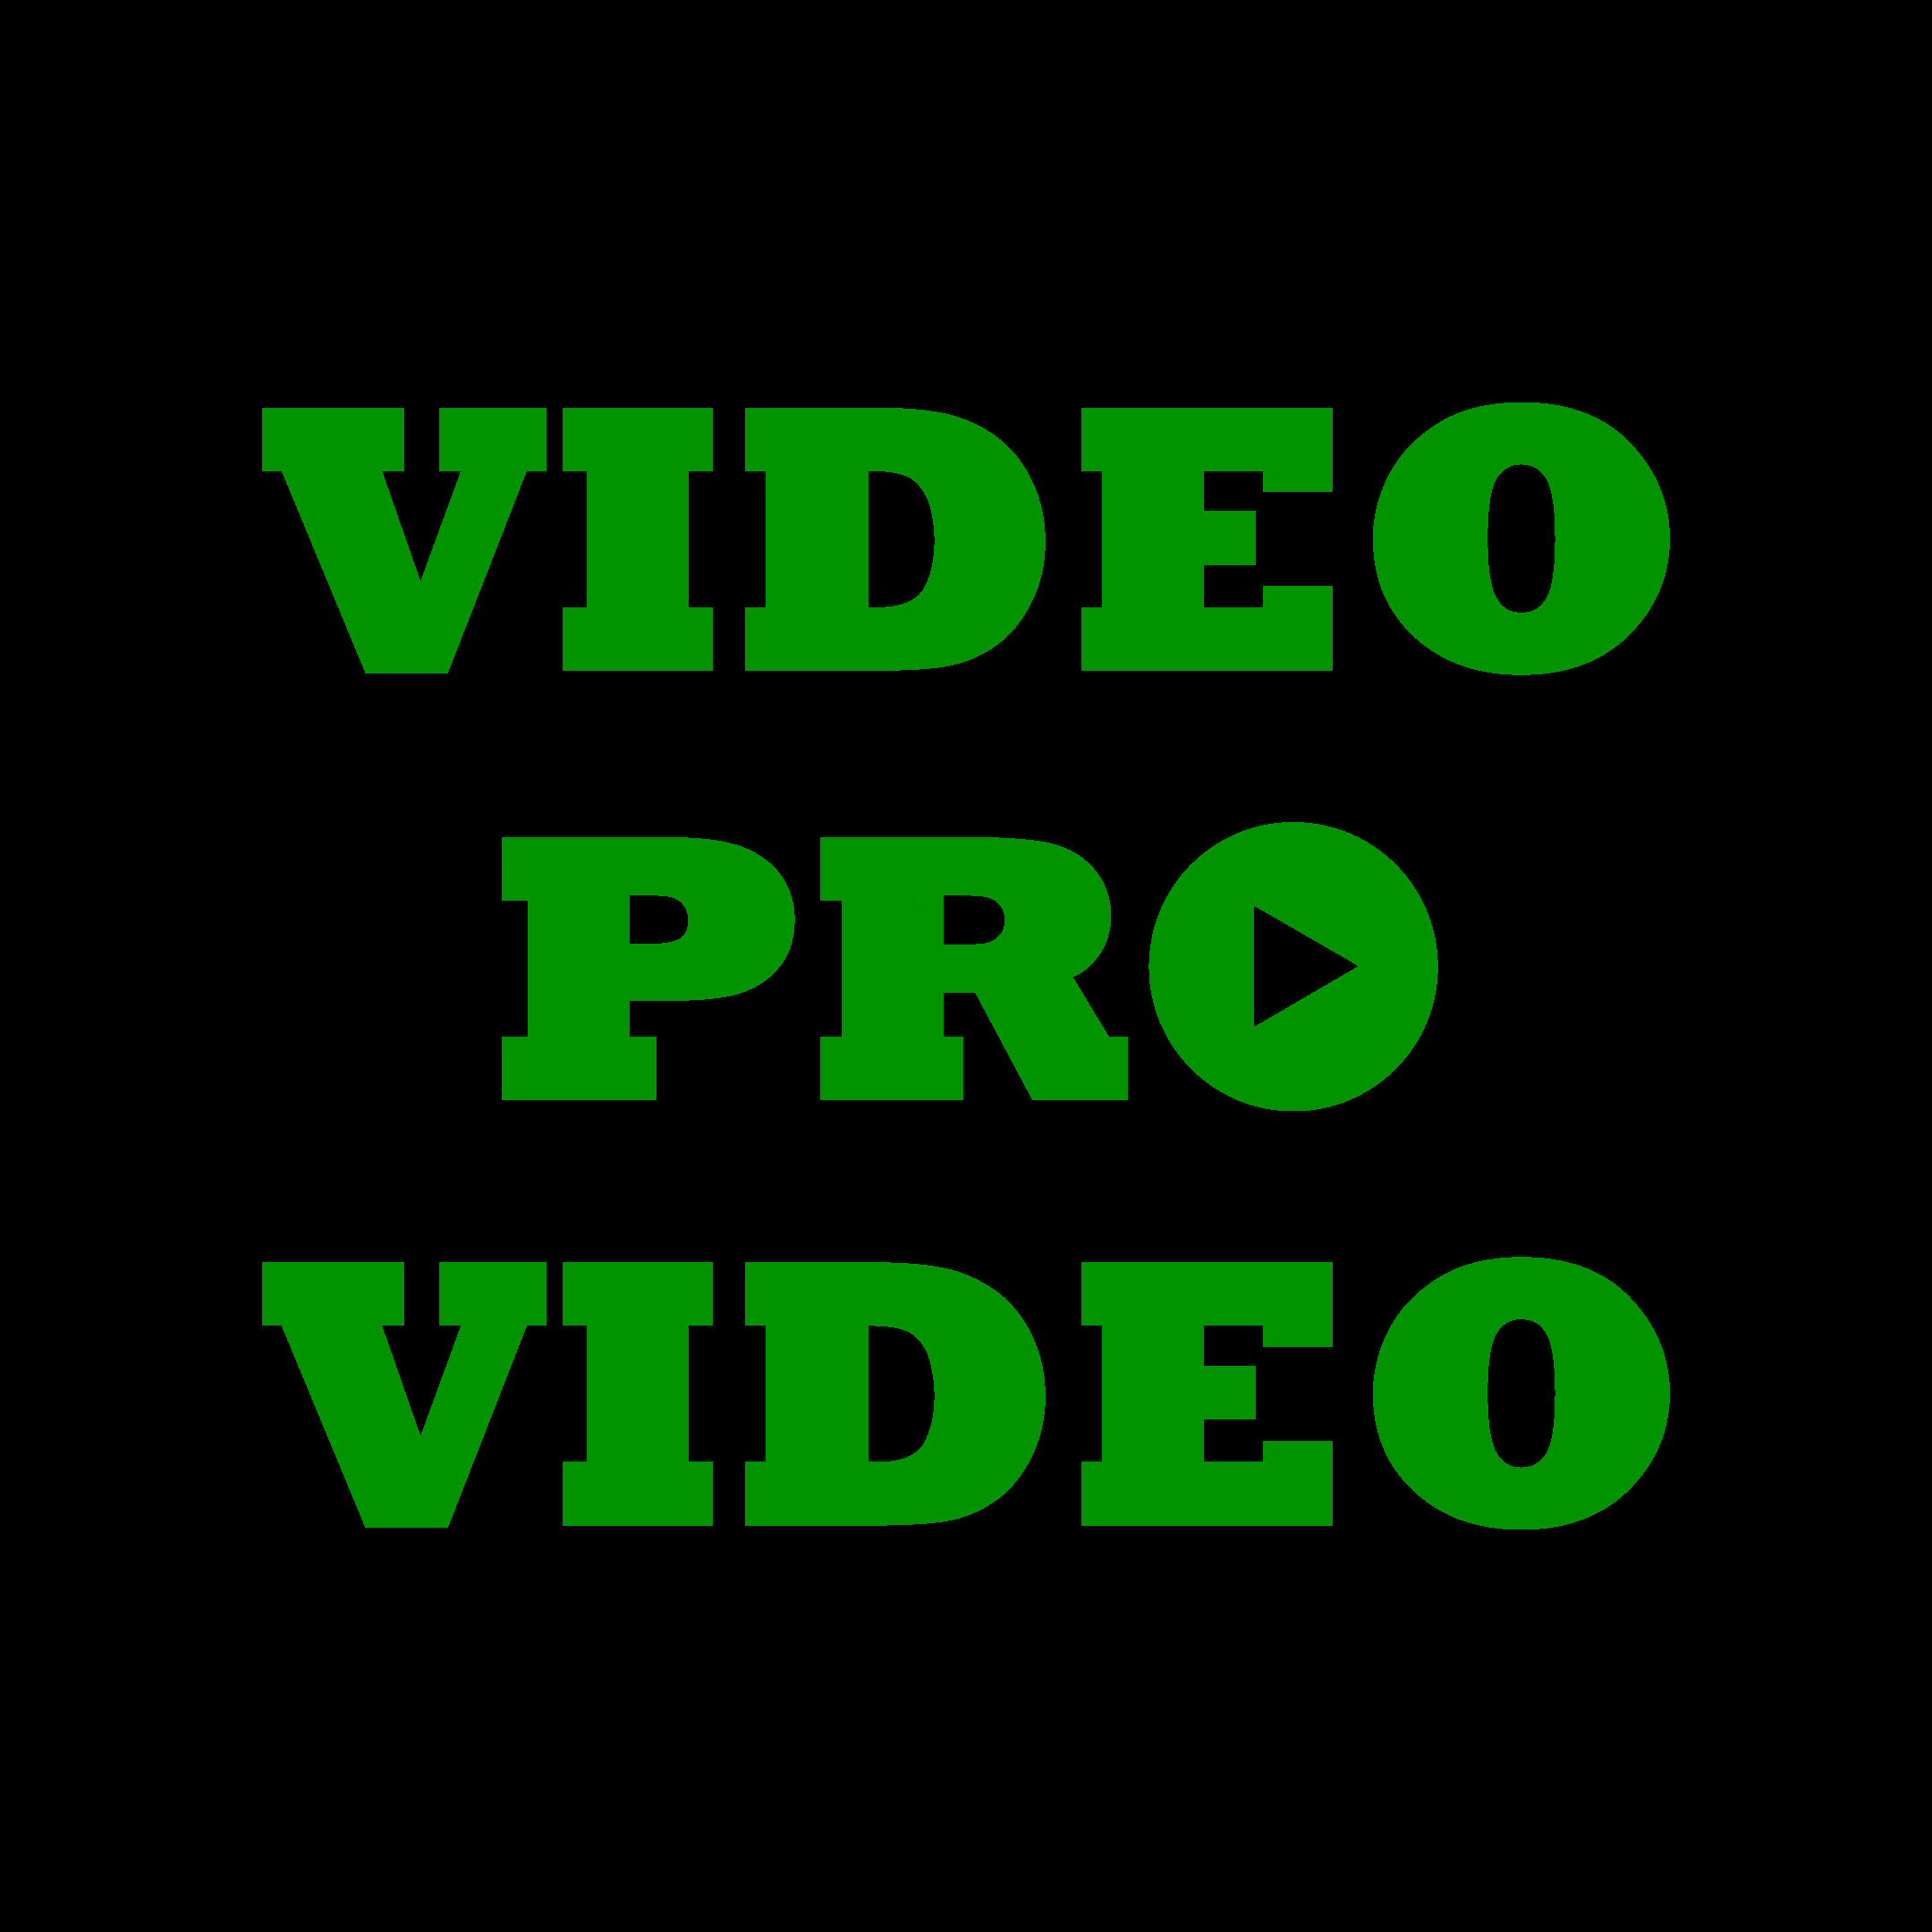 Pro video